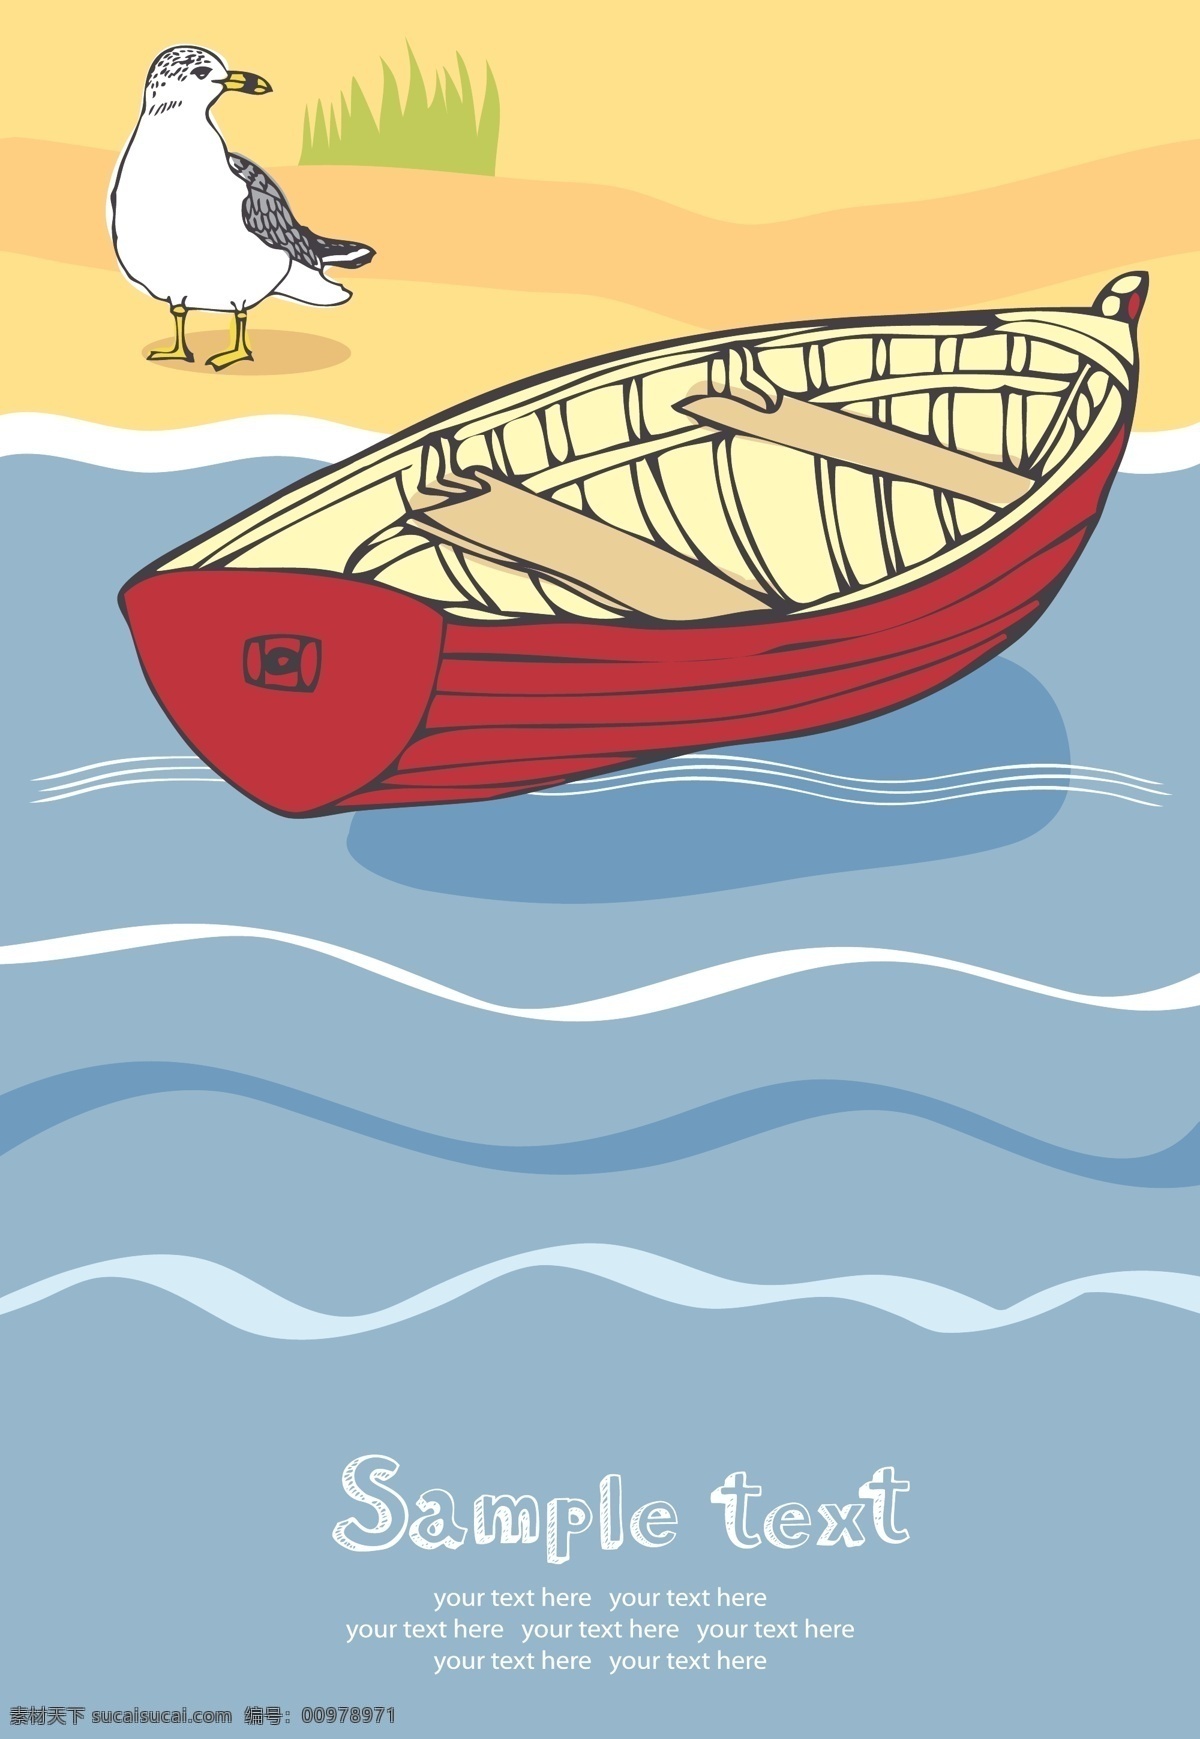 夏日 海滩 休闲 假期 插画 风格 矢量 贝壳 插画风格 灯塔 度假 帆船 海鸥 海上 海洋 眺望台 木船 救生圈 矢量图 其他矢量图